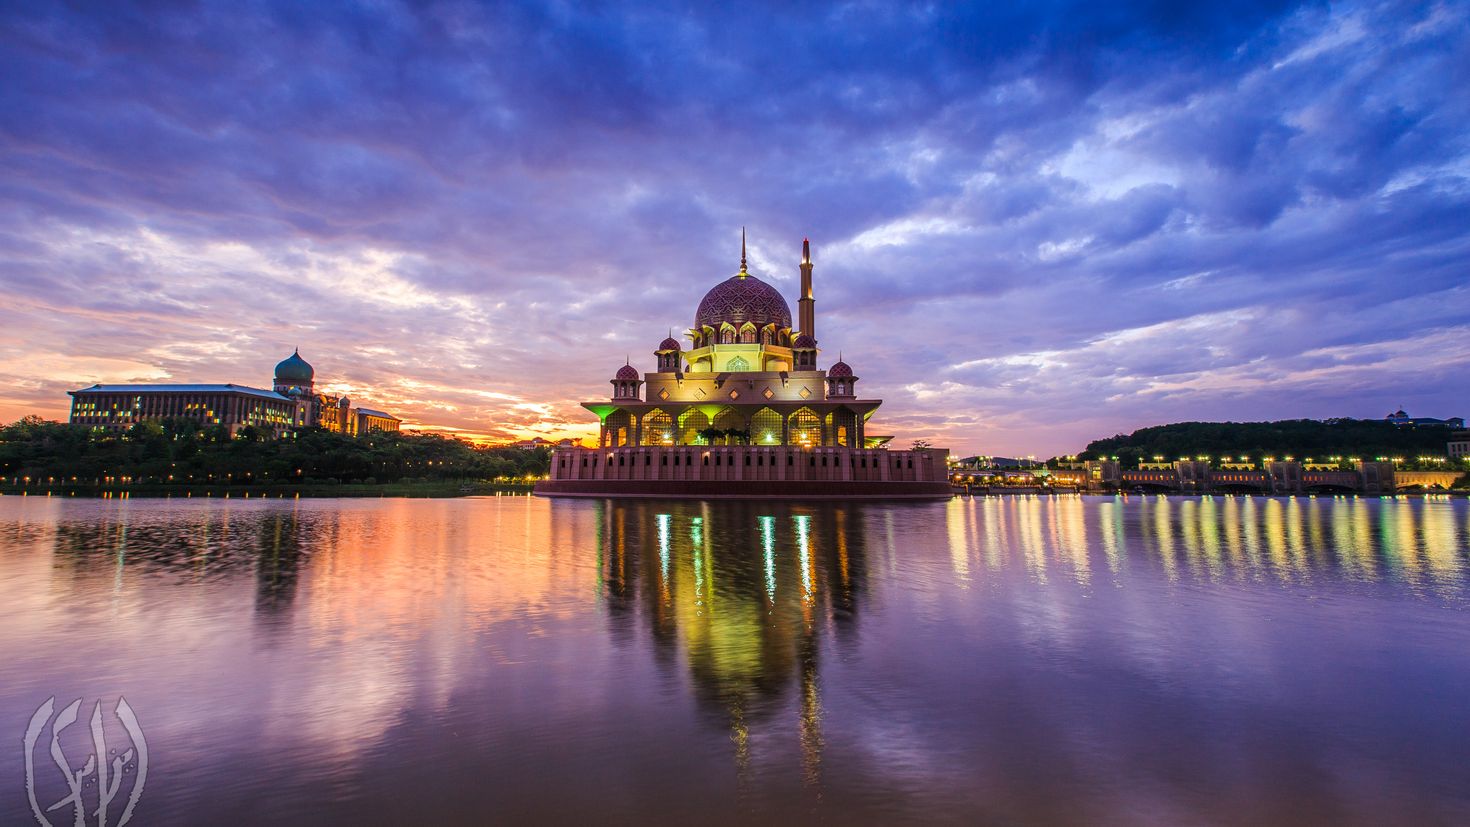 Восточная малайзия. Мечеть Путра Малайзия. Путраджайя розовая мечеть. Мечеть в сумерках.